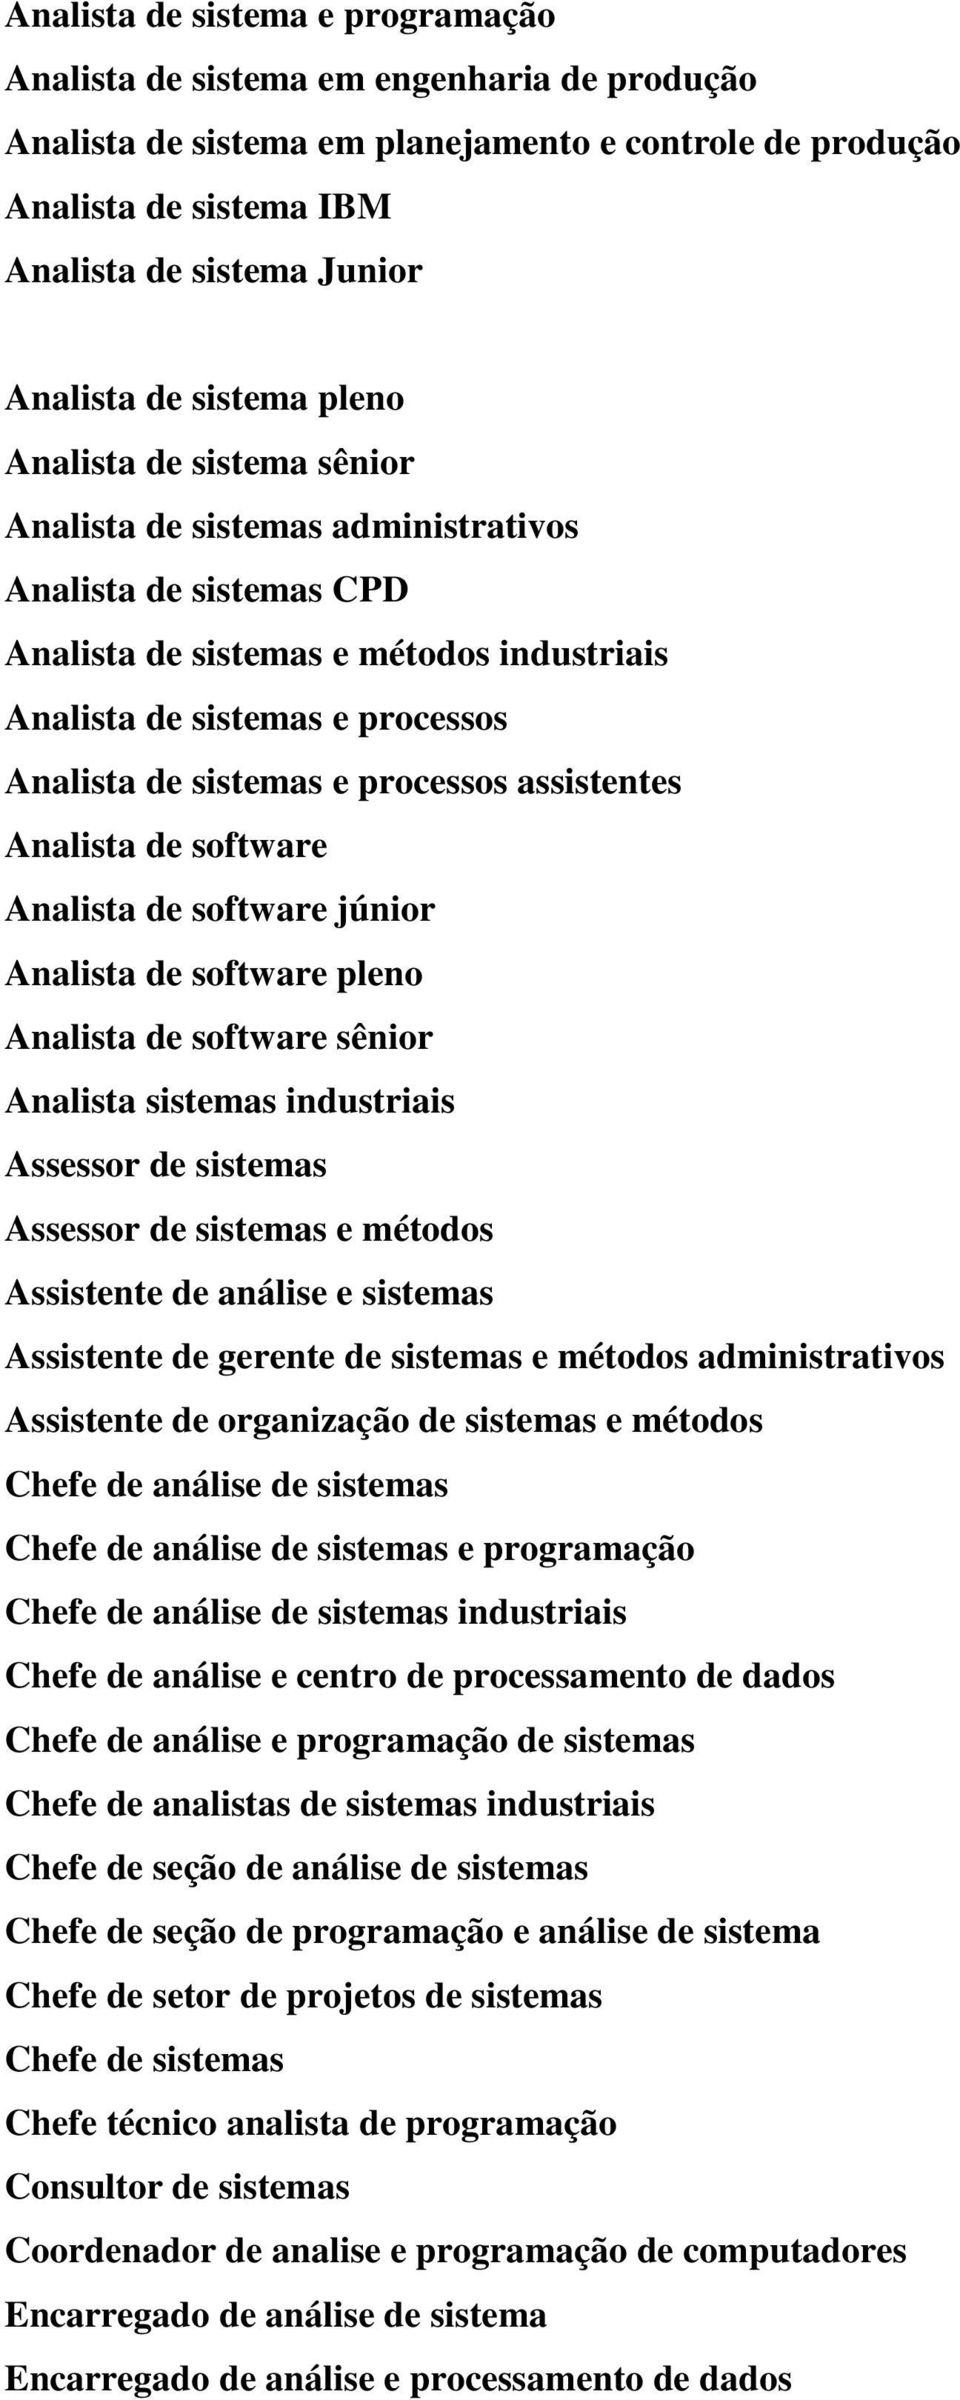 sistemas e processos assistentes Analista de software Analista de software júnior Analista de software pleno Analista de software sênior Analista sistemas industriais Assessor de sistemas Assessor de